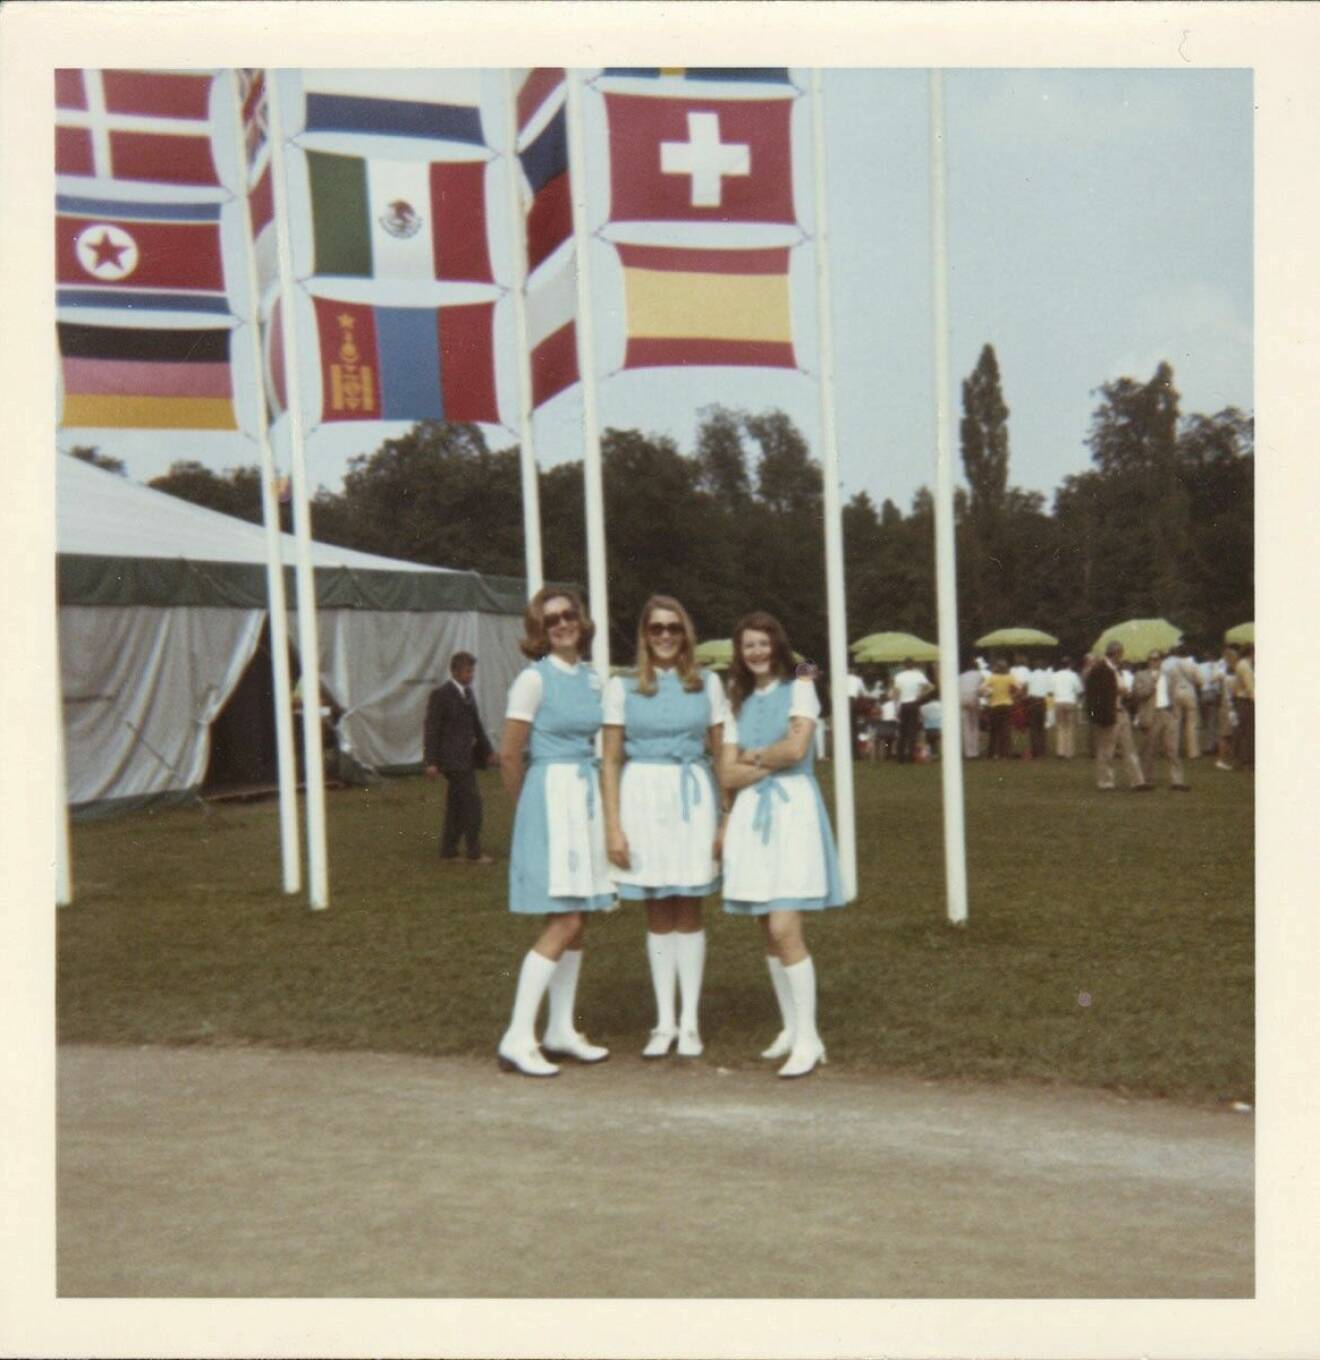 Anna-Sophia von Celsing i sällskap med två andra OS-värdinnor framför en mängd nationsflaggor.